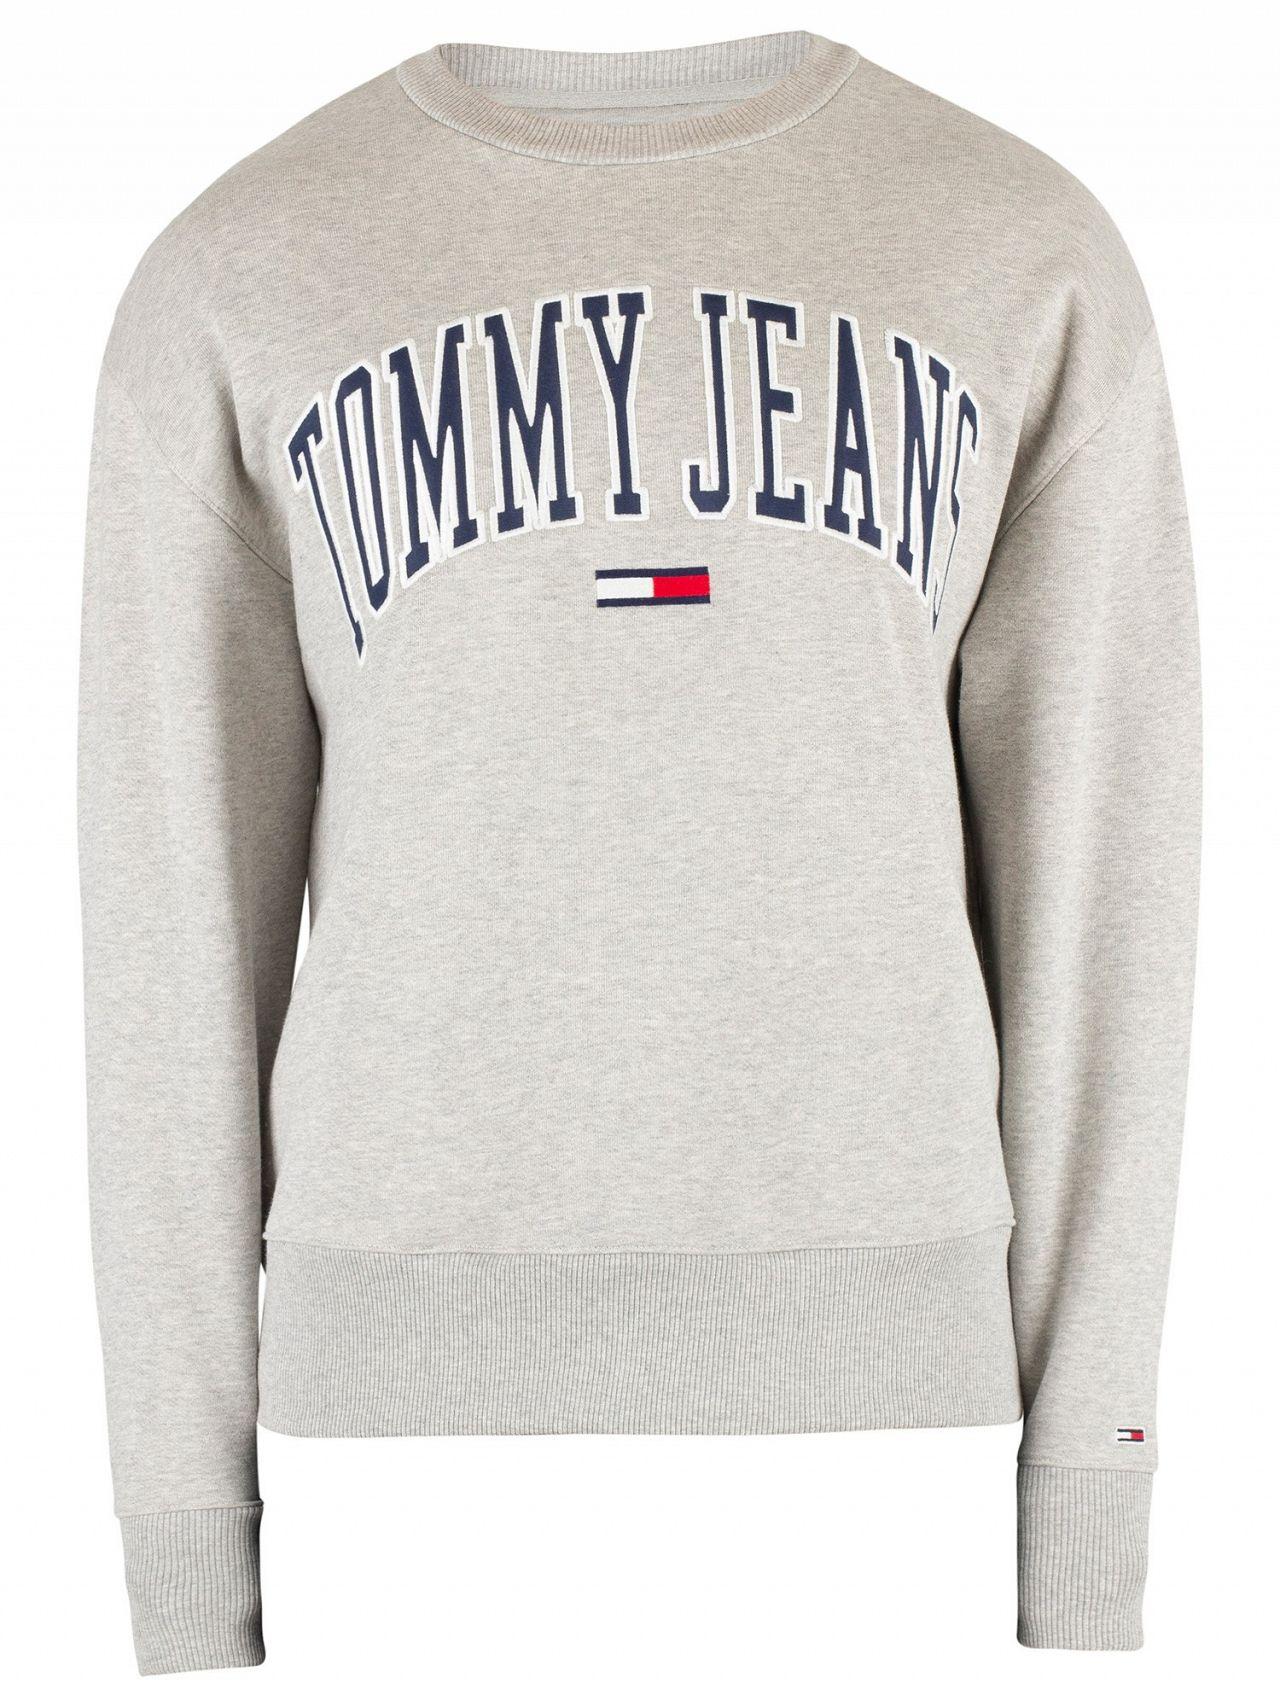 Lyst - Tommy Hilfiger Light Grey Heather Clean Collegiate Sweatshirt in ...